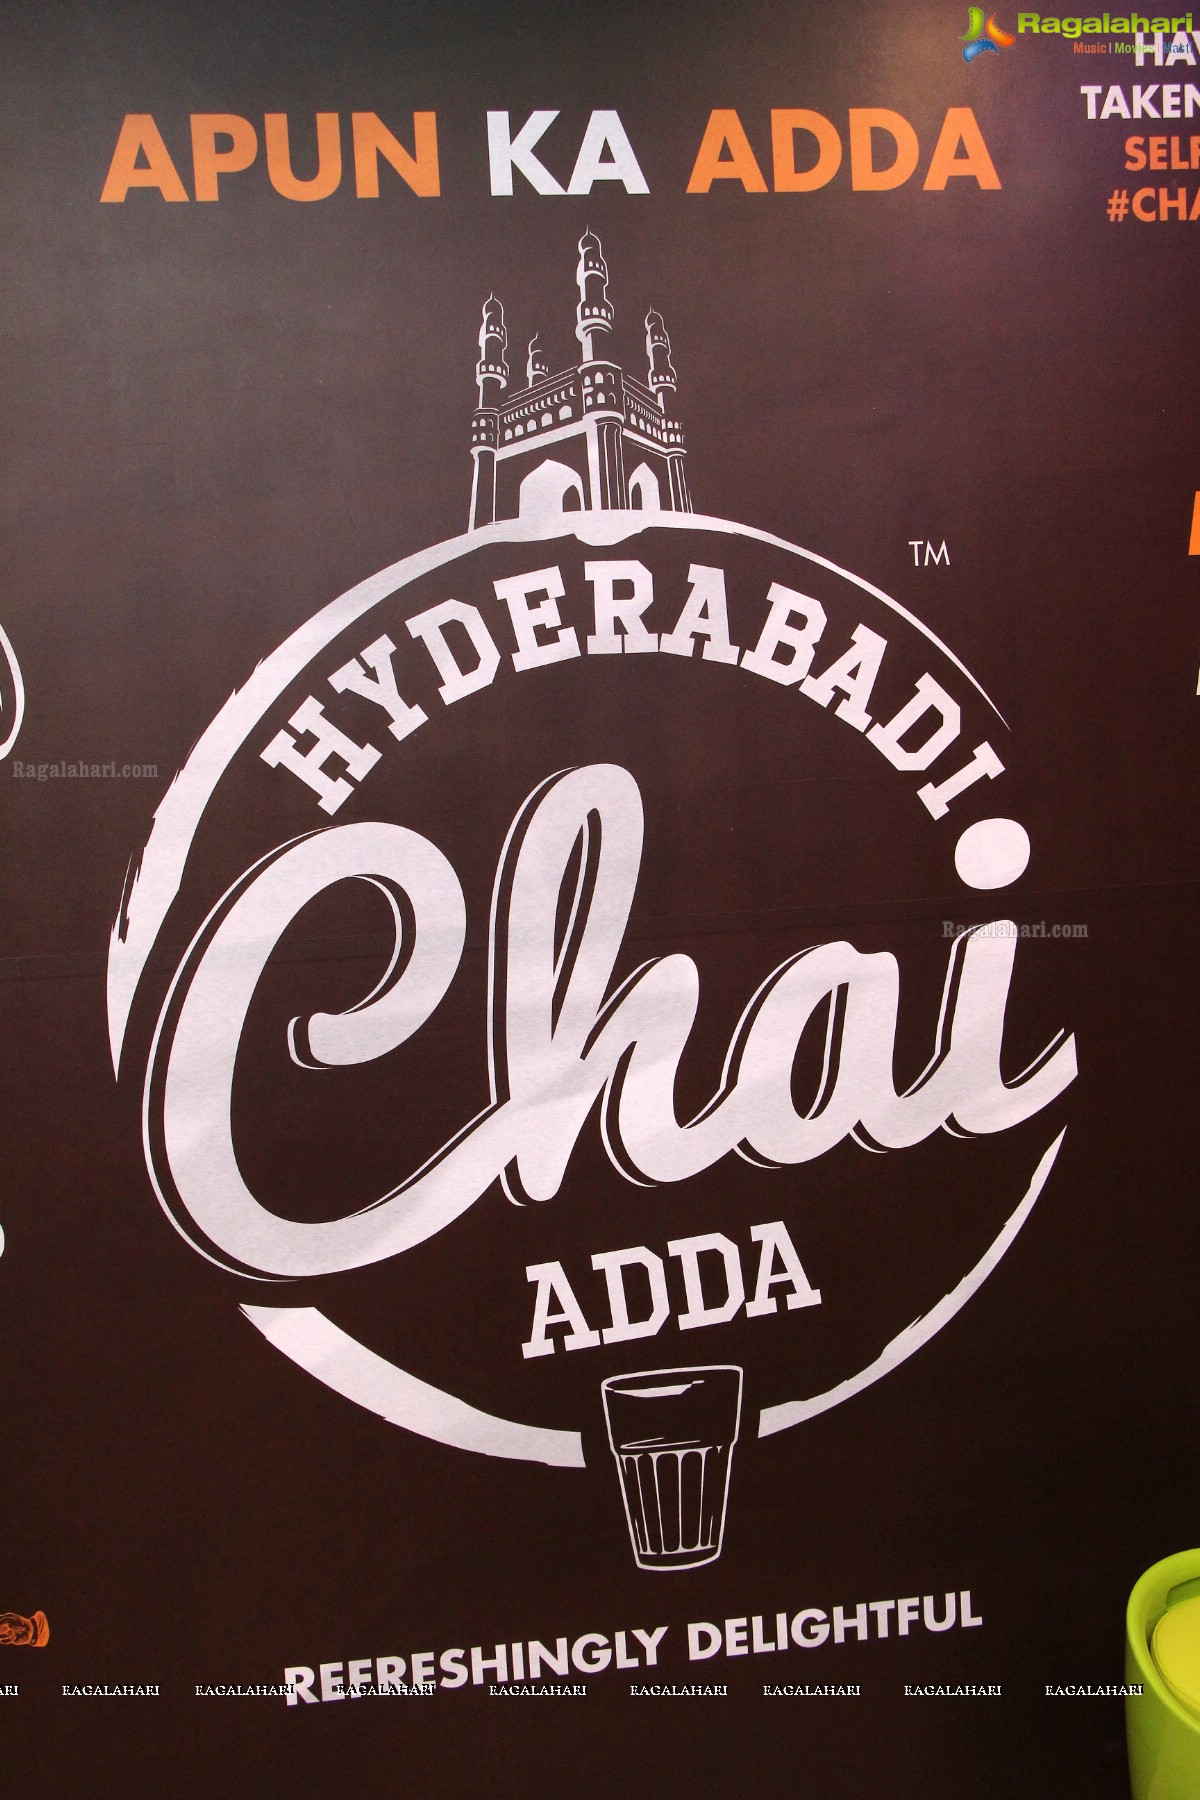 Hyderabad Chai Adda Launch